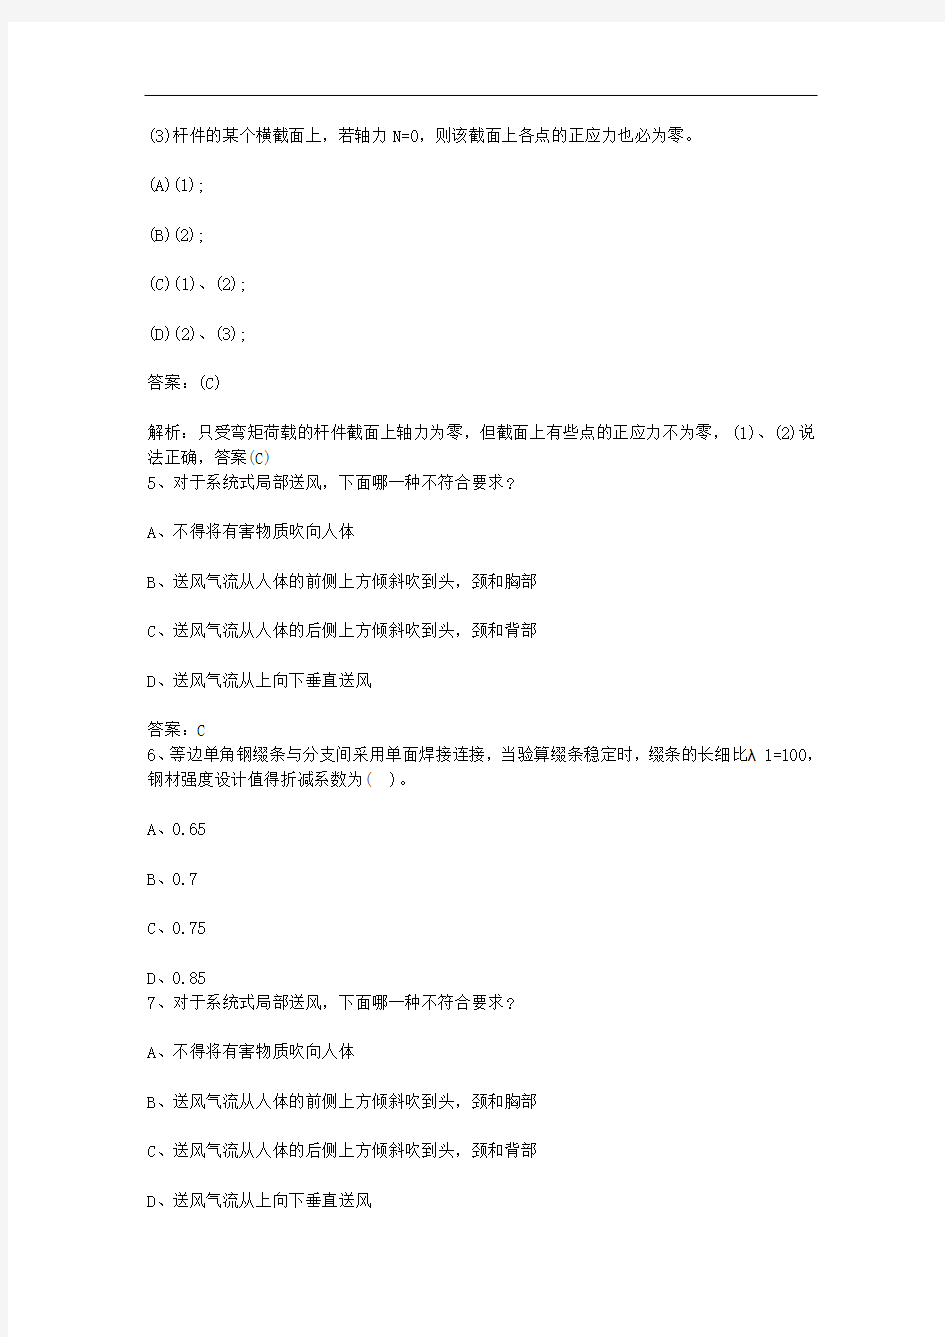 香港特别行政区结构工程师备考复习笔记每日一练(2014.4.5)